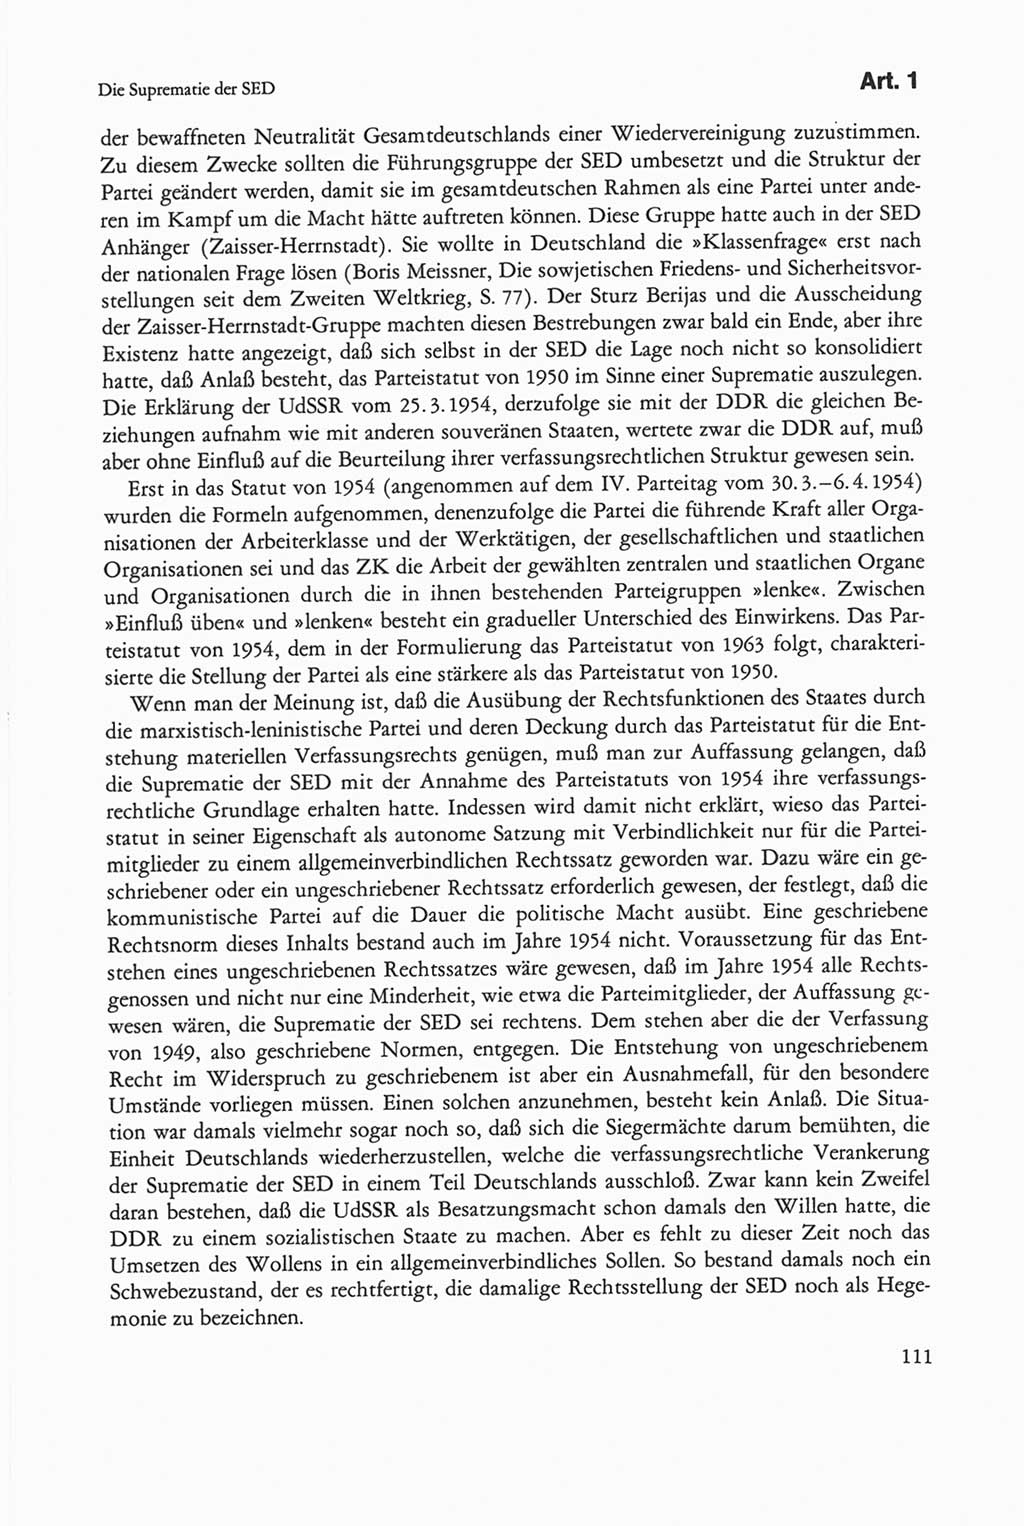 Die sozialistische Verfassung der Deutschen Demokratischen Republik (DDR), Kommentar 1982, Seite 111 (Soz. Verf. DDR Komm. 1982, S. 111)